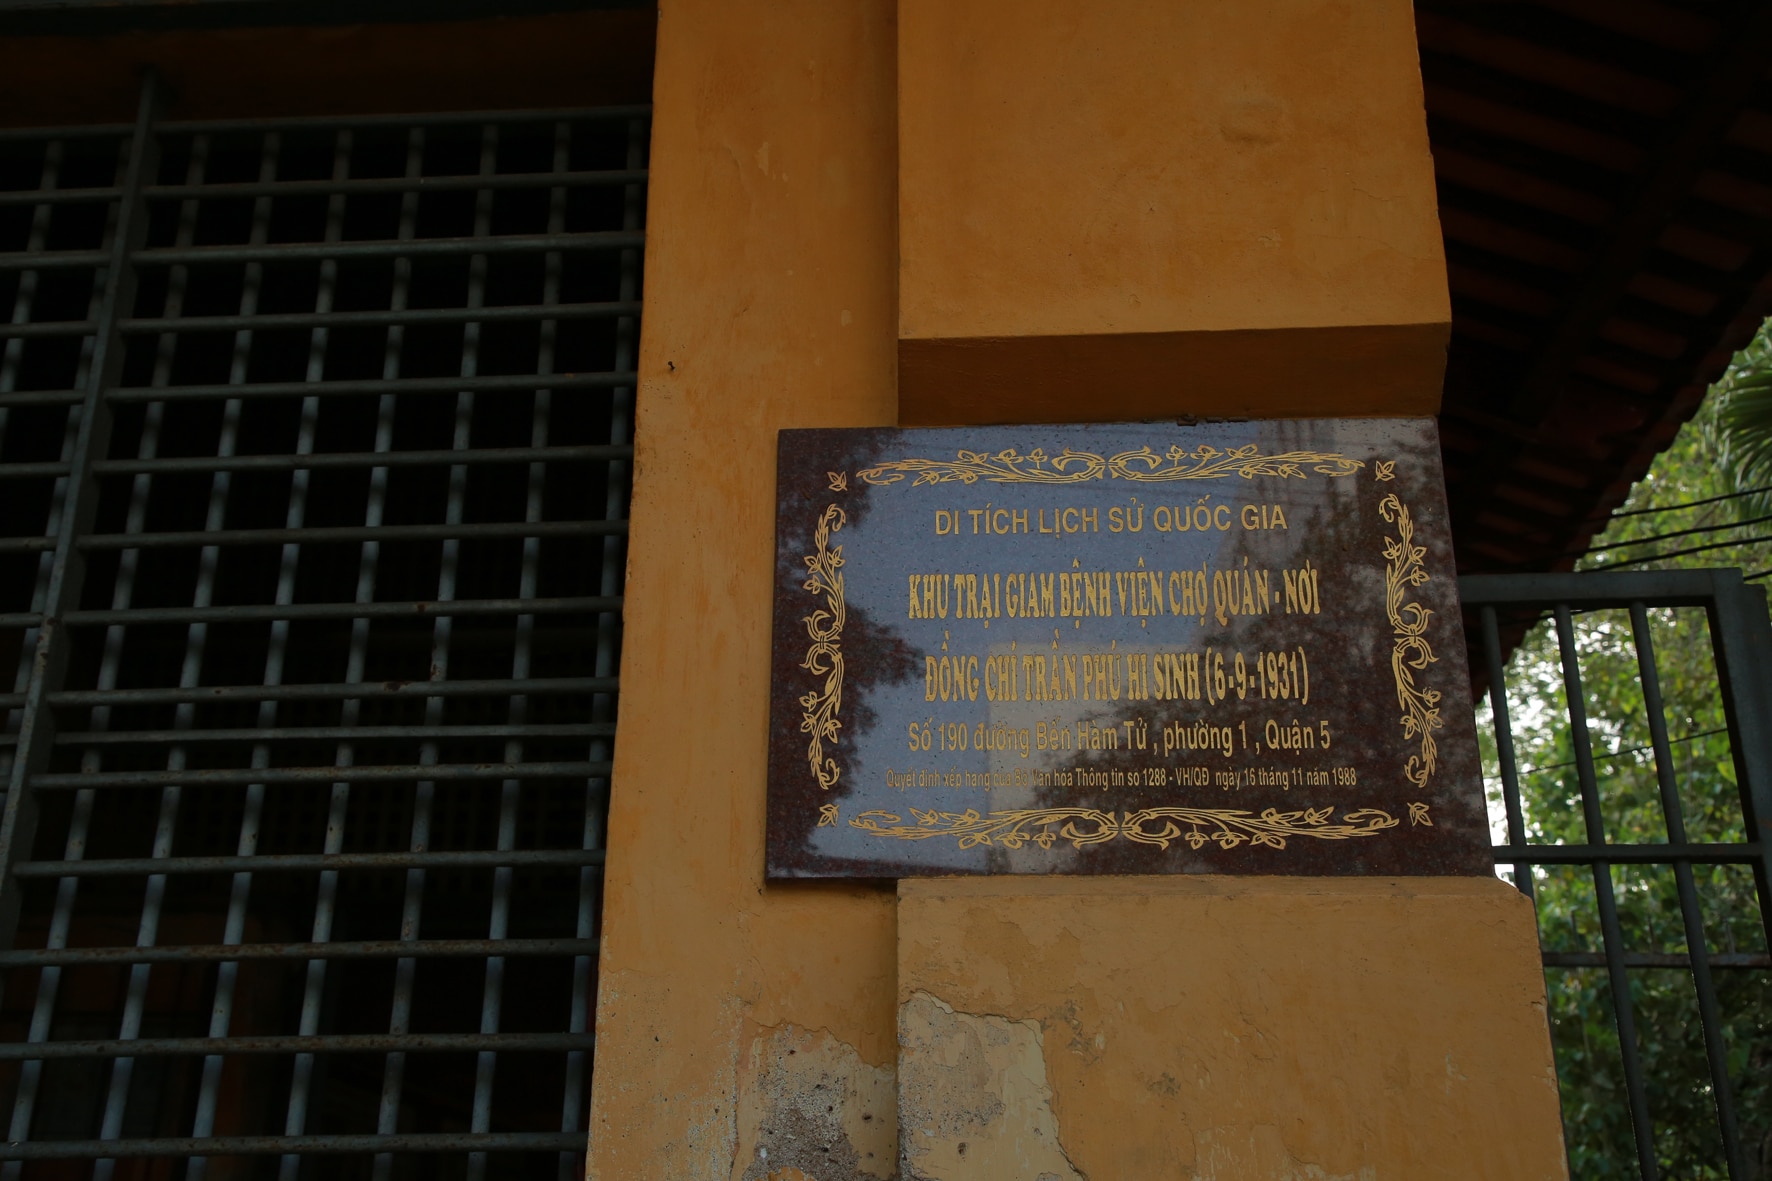 Khu trại giam Bệnh viện Chợ Quán, nơi Tổng Bí thư Trần Phú bị giam cầm gắn chặt với lịch sử Sài Gòn-Gia Định  - Ảnh 8.